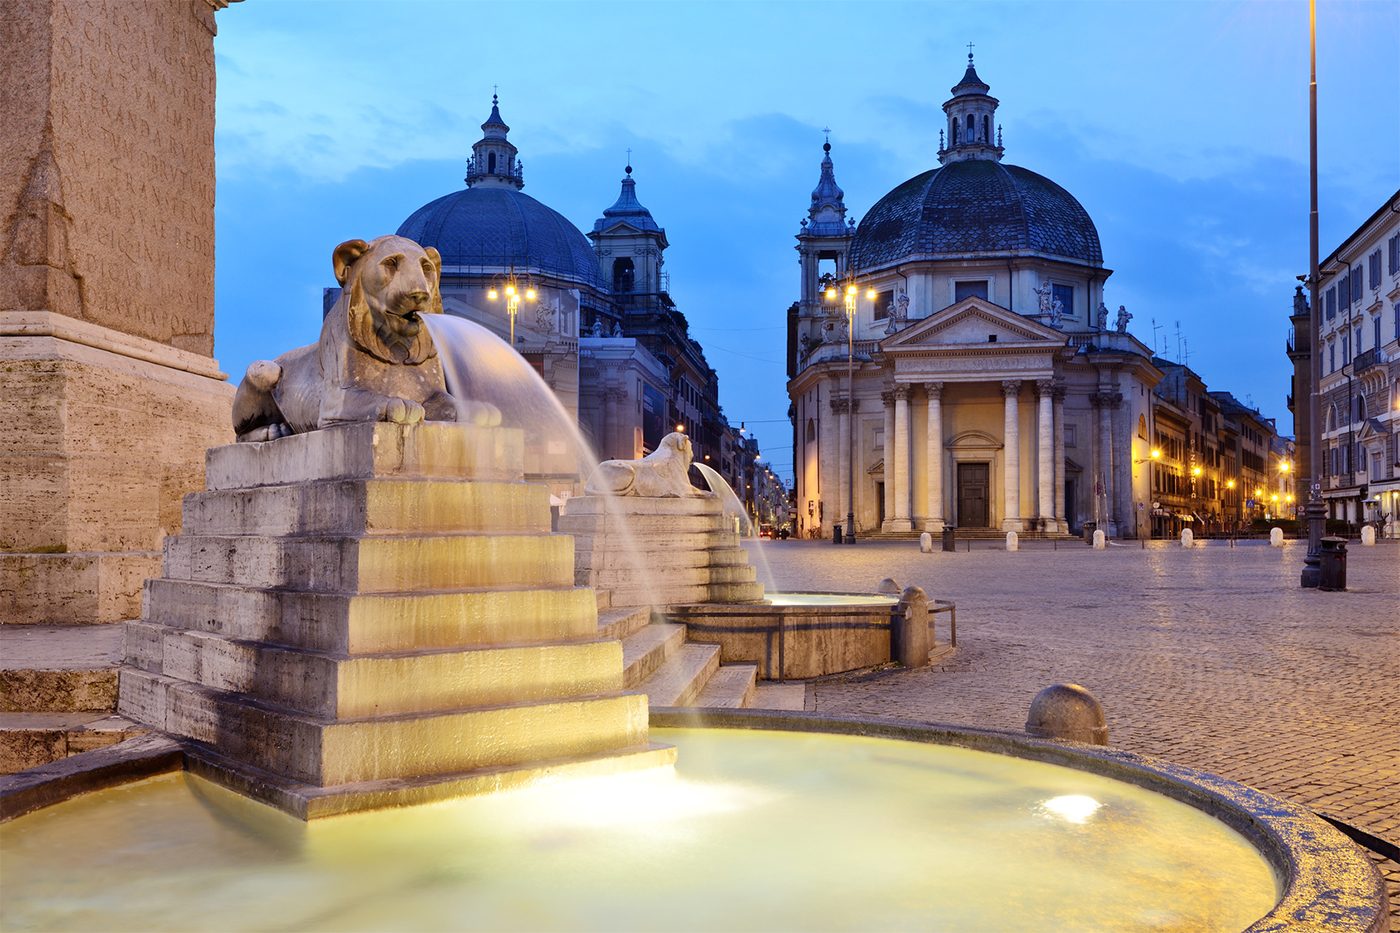 Piazza del Popolo - Particular de las pilas con los leones